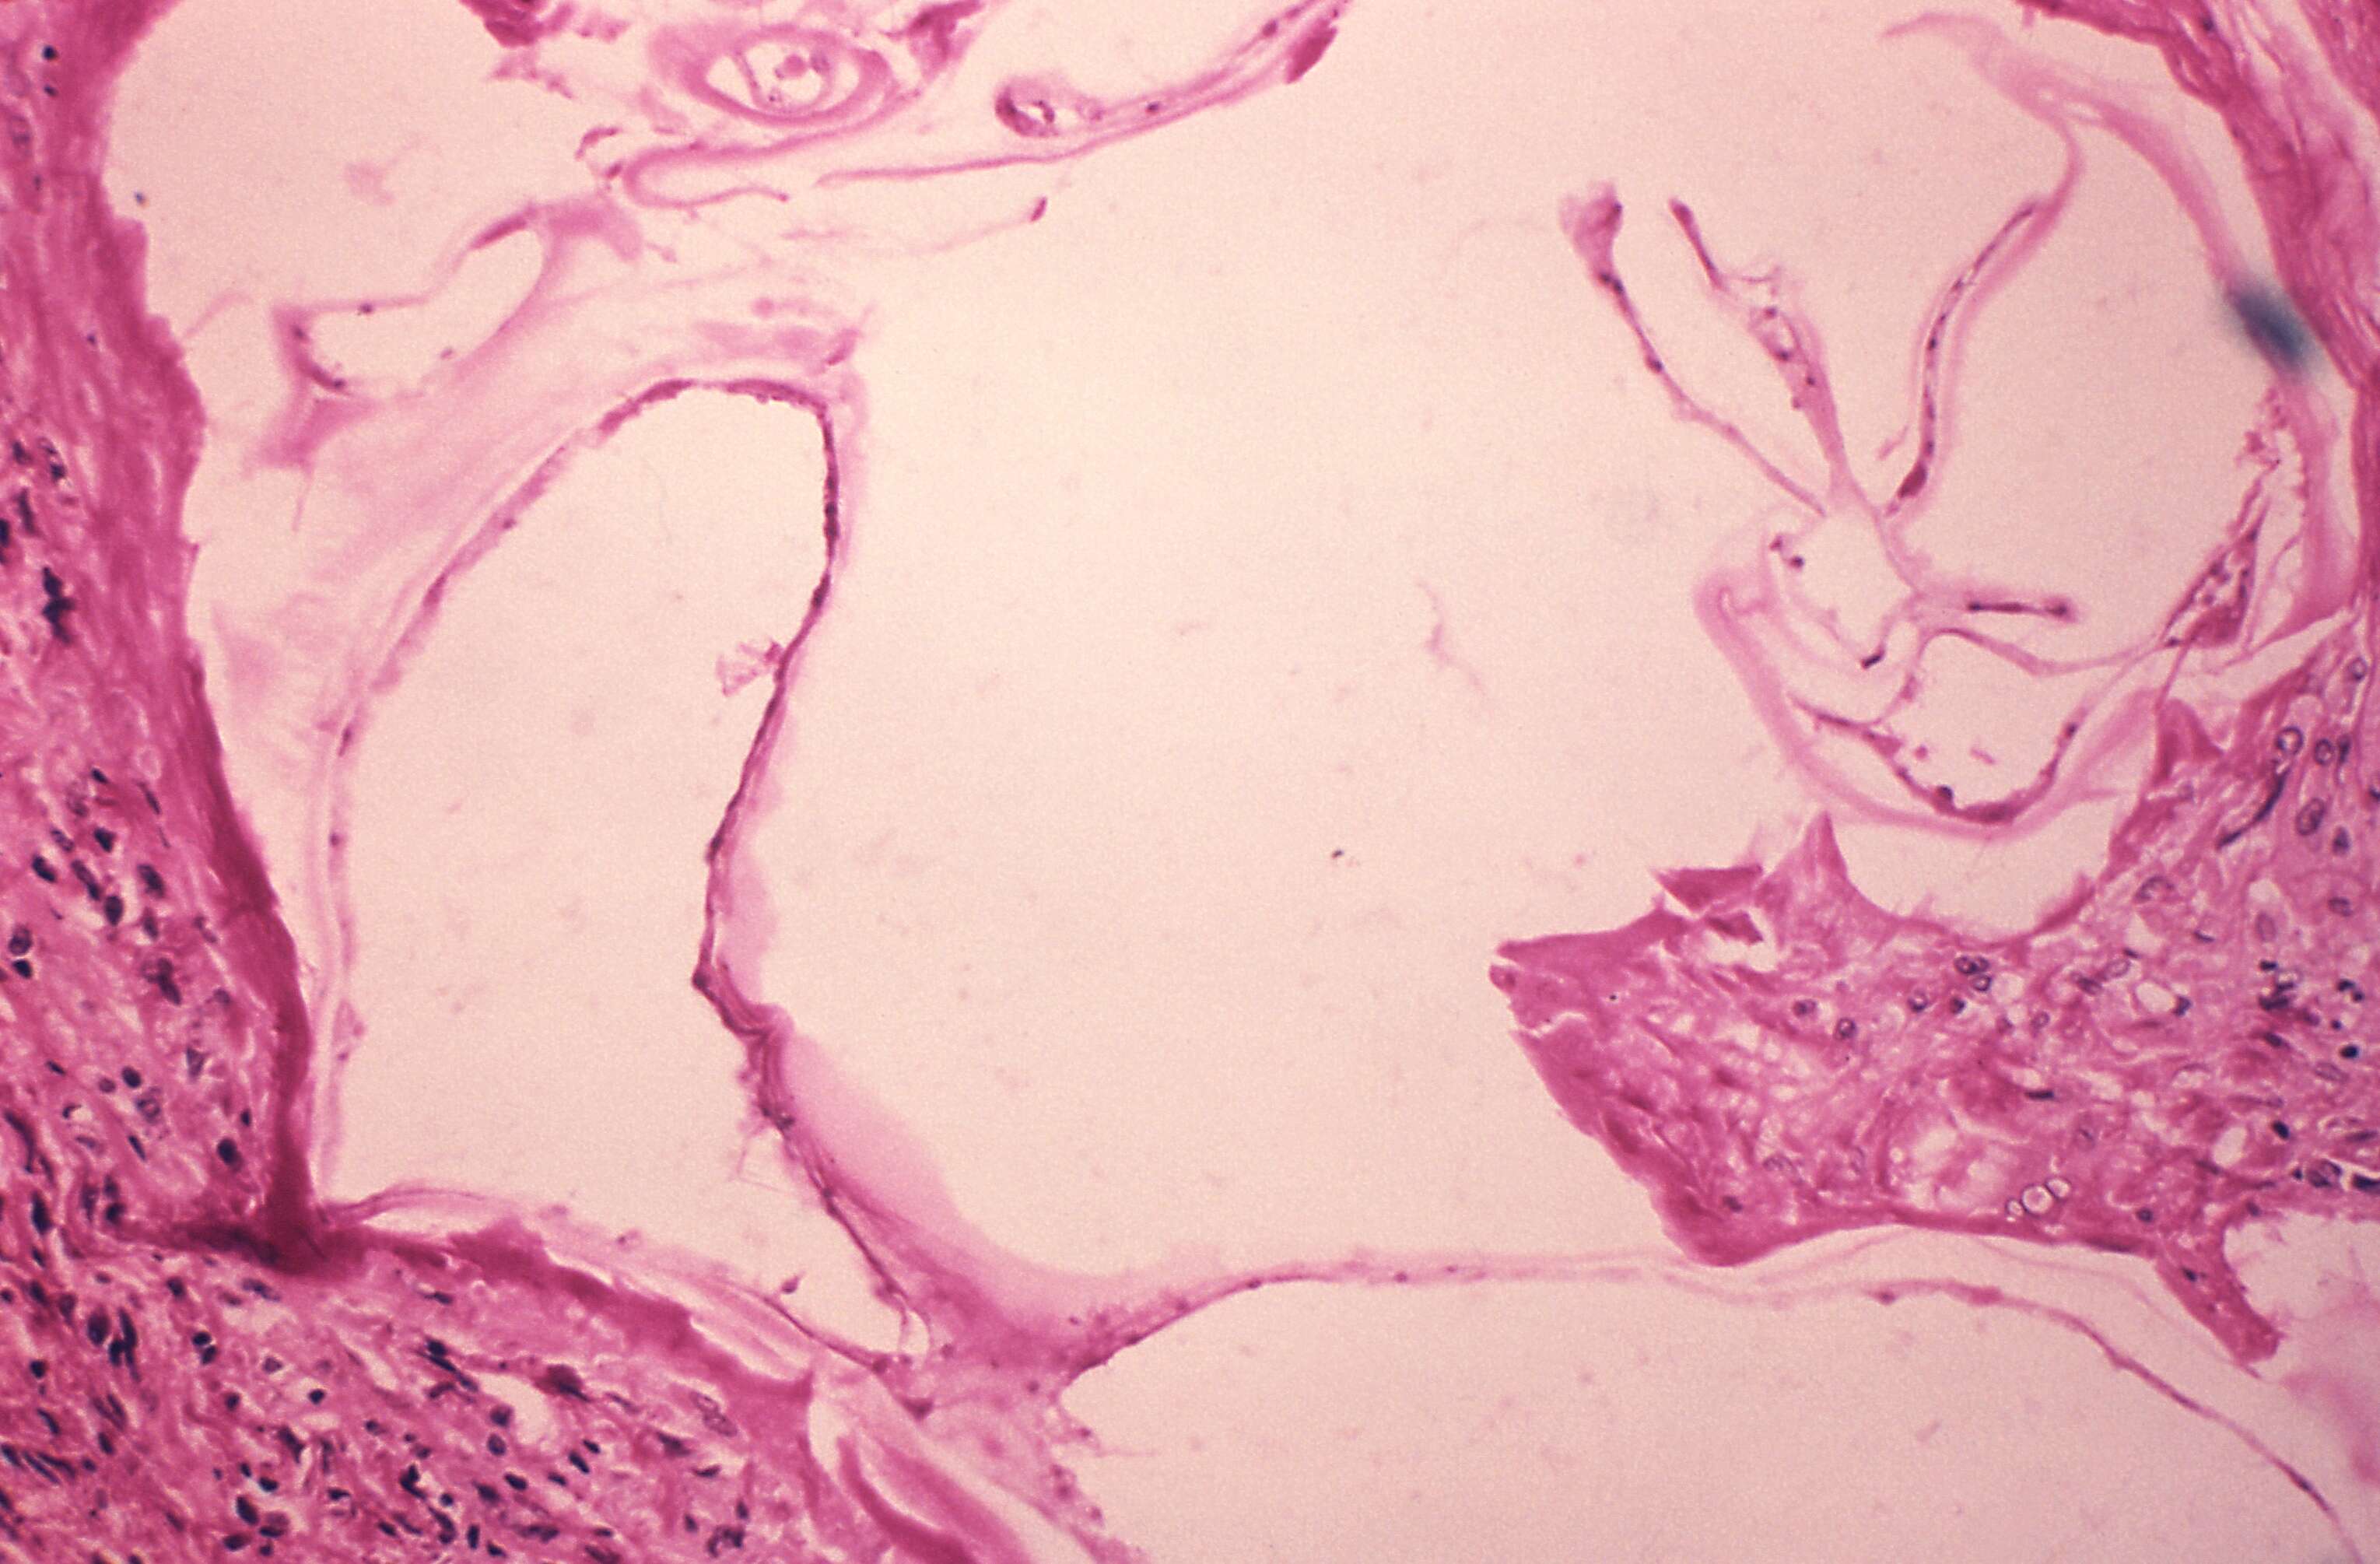 Image of Echinococcus vogeli